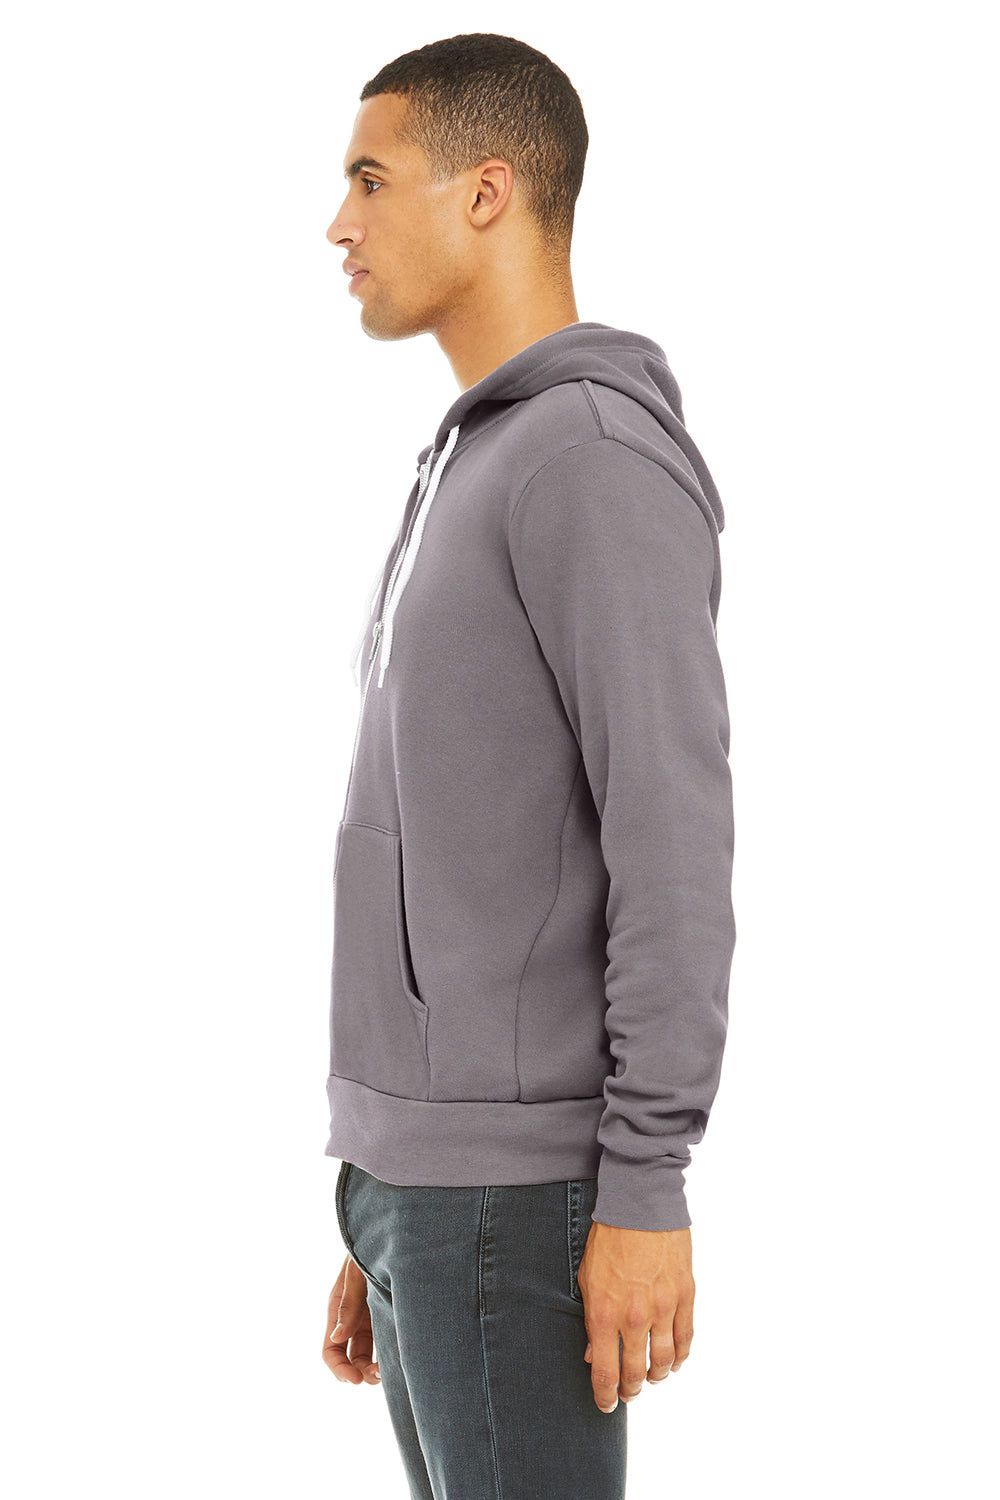 Bella + Canvas BC3739/3739 Mens Fleece Full Zip Hooded Sweatshirt Hoodie Storm Grey Model Side